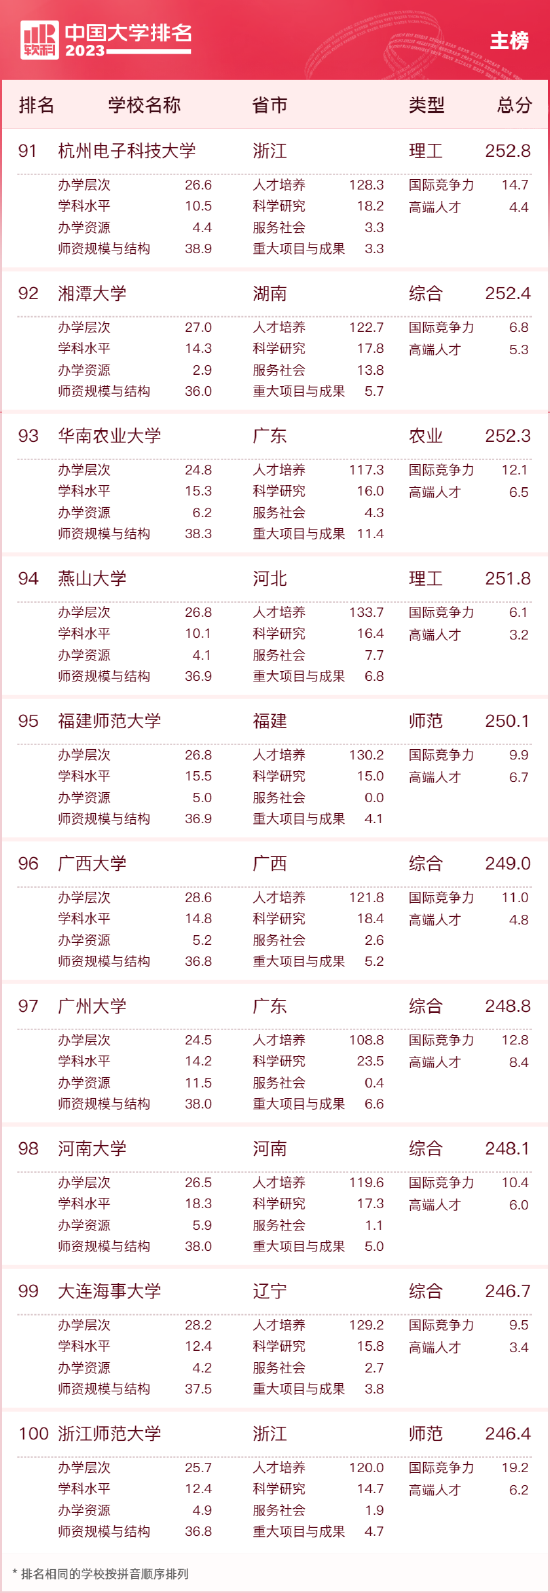 2023中国大学排名公布 清华北大浙大连续9年蝉联三甲 第10张